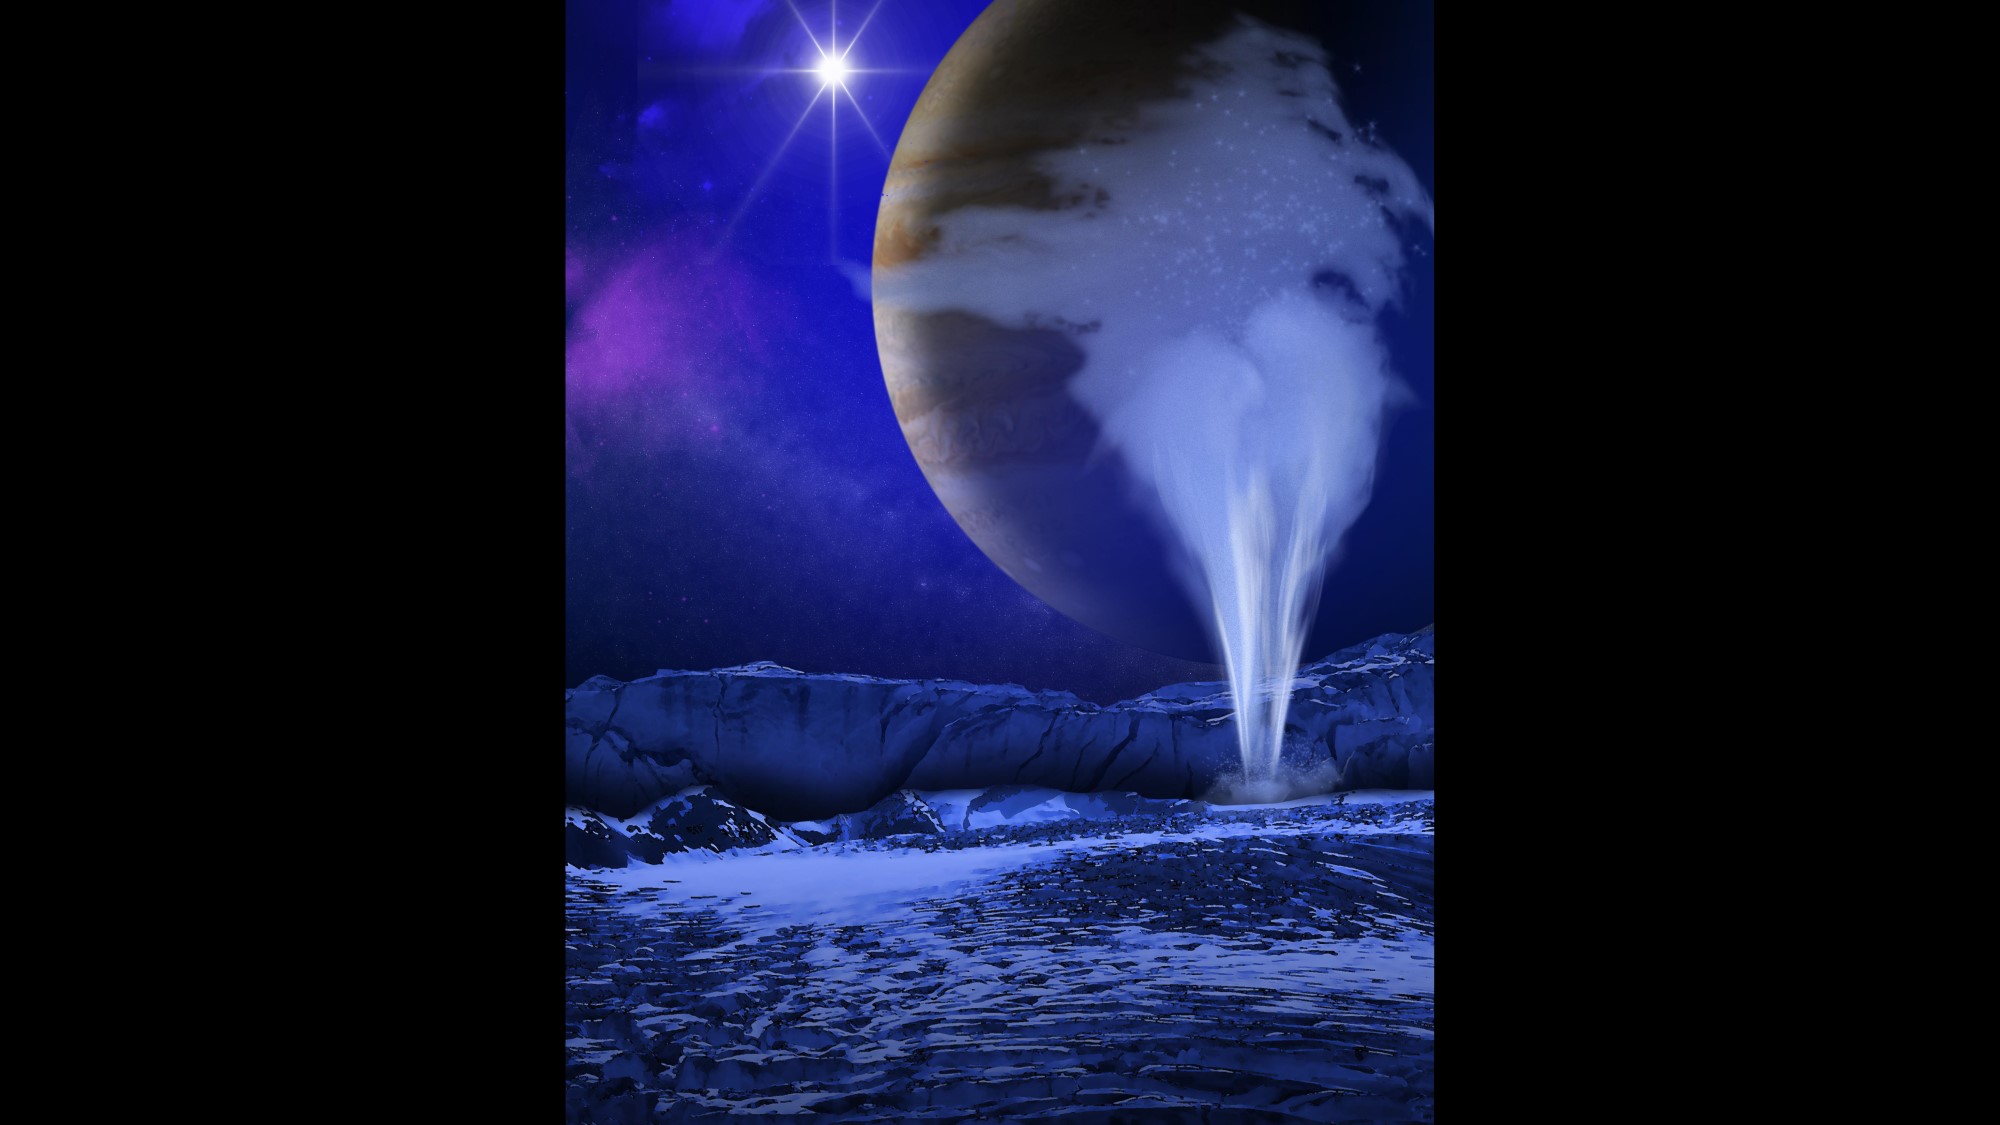 le dessin montre des geysers s'élevant dans le ciel dominés par Jupiter